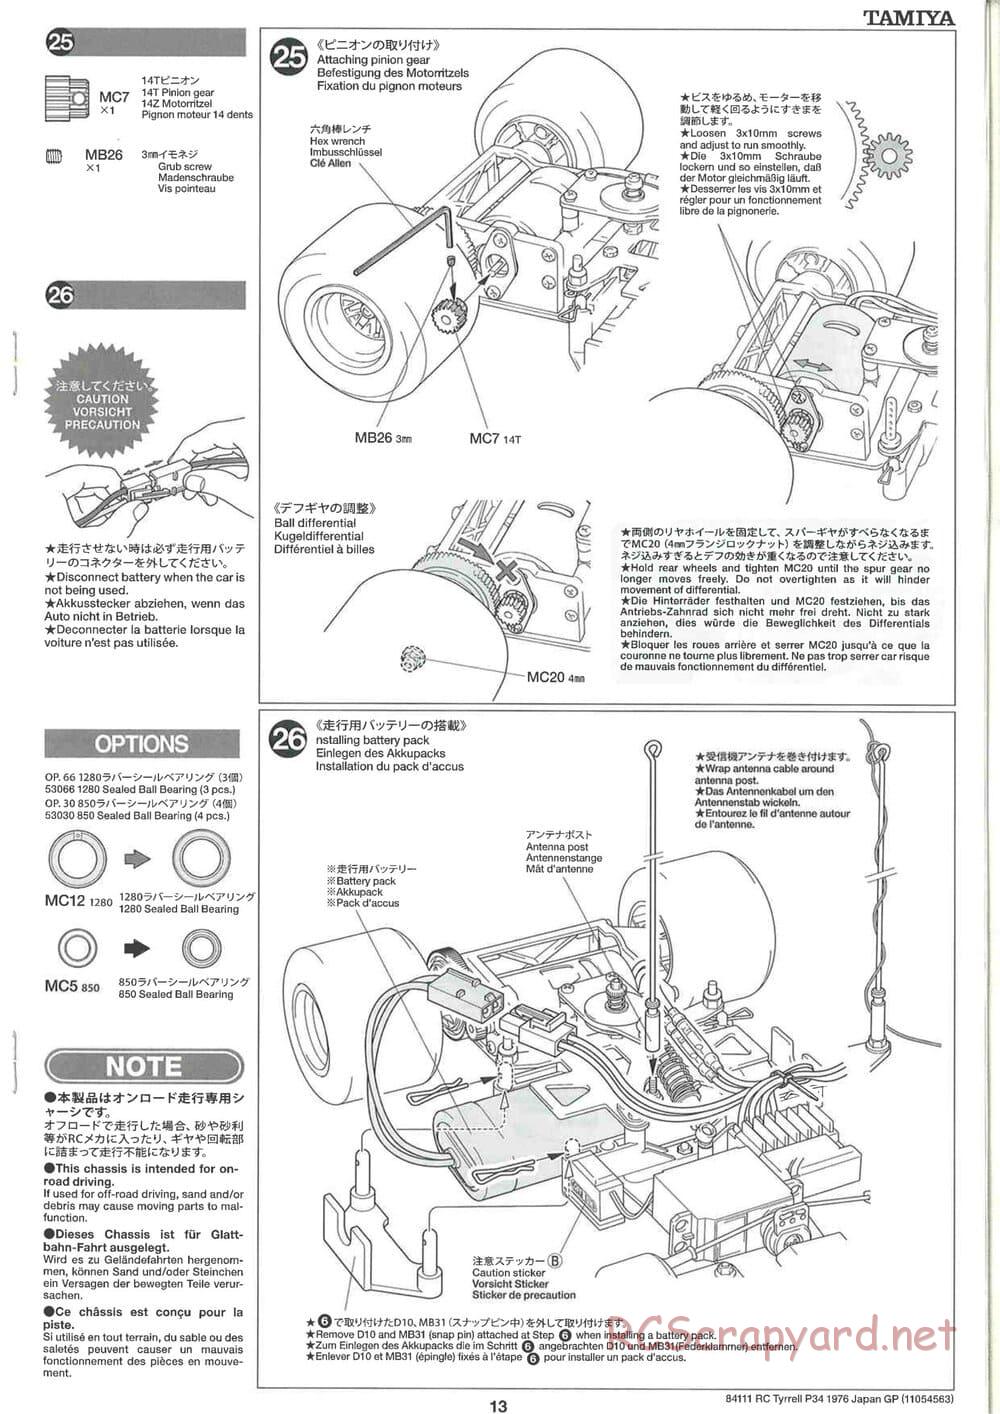 Tamiya - Tyrrell P34 1976 Japan GP - F103-6W Chassis - Manual - Page 13